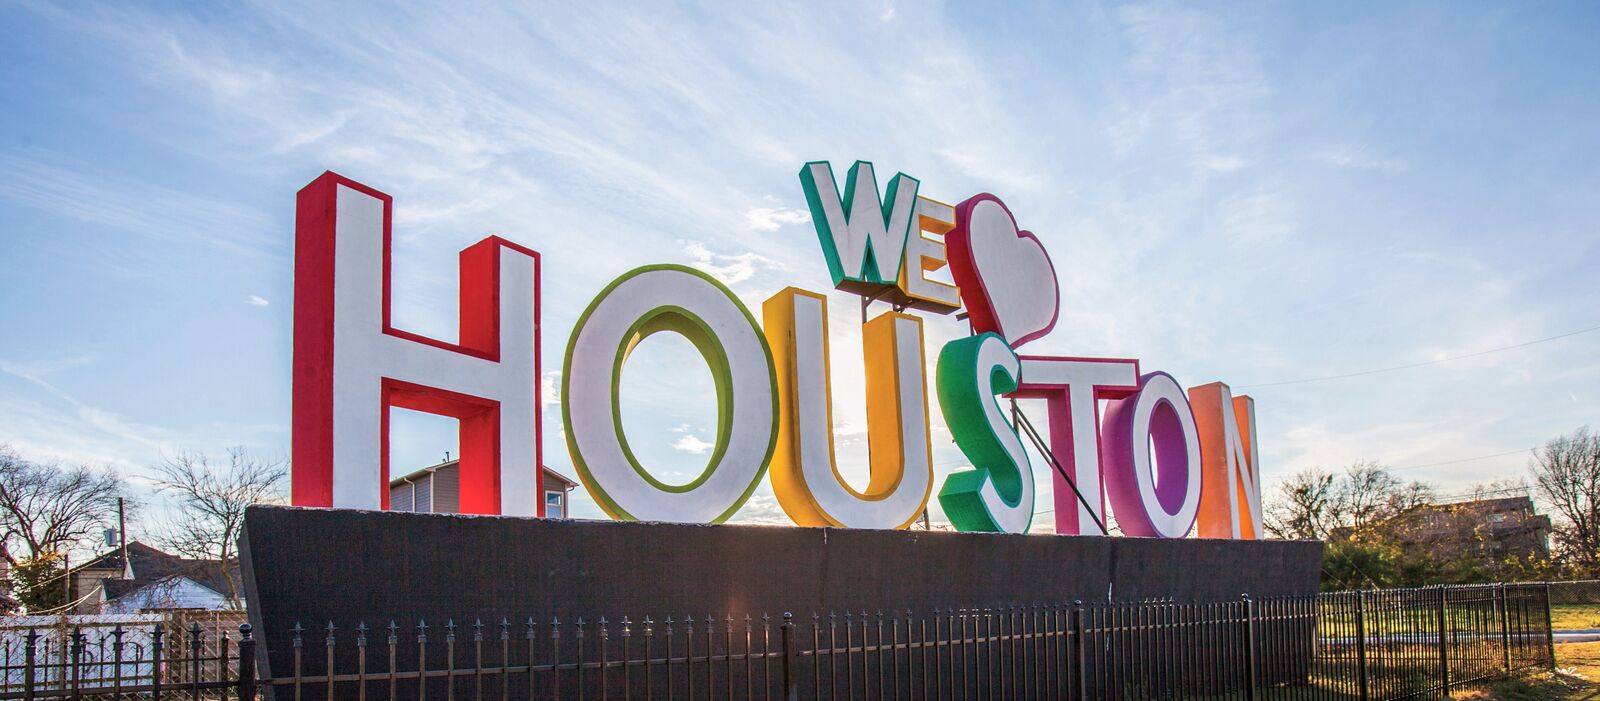 "We Heart Houston" von dem KÃ¼nstler David Adickers im Stadtkern von Houston